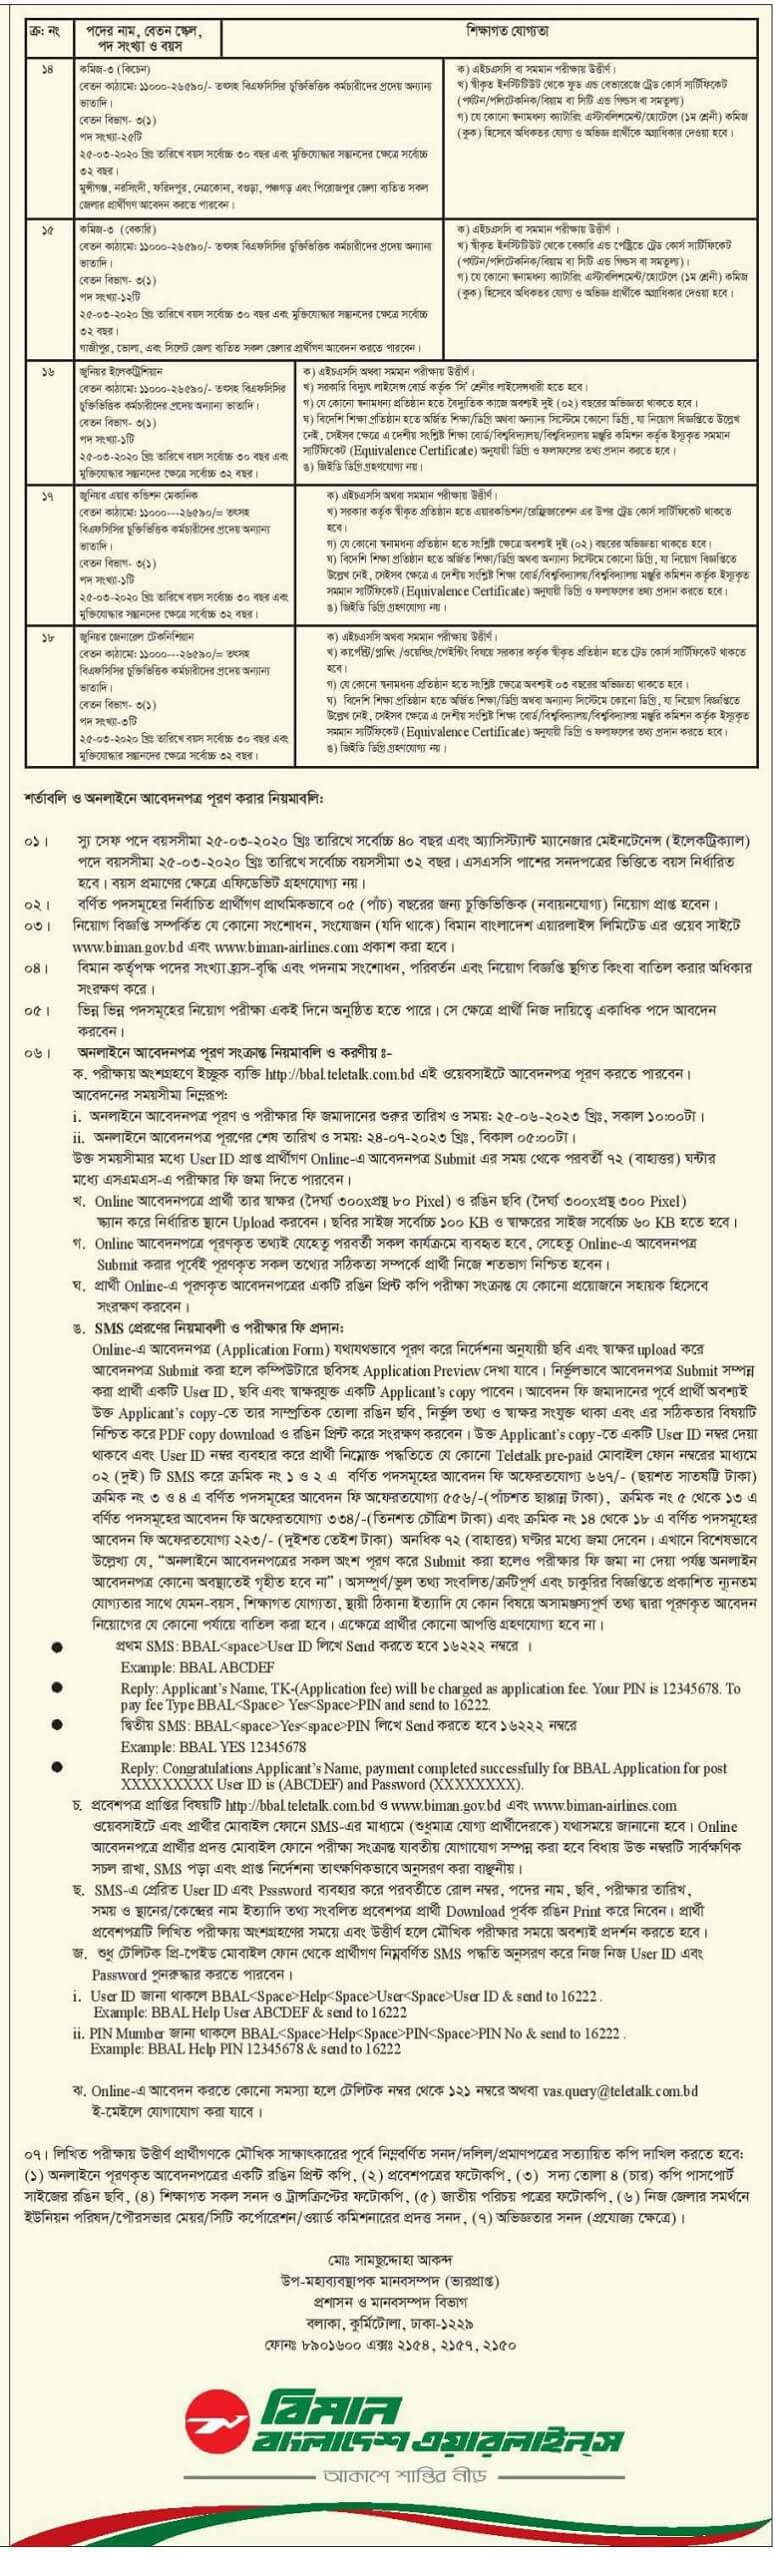 বিমান বাংলাদেশ এয়ারলাইন্স নিয়োগ বিজ্ঞপ্তি  ২০২৩ | Biman Bangladesh Airlines BBAL Job Circular 2023